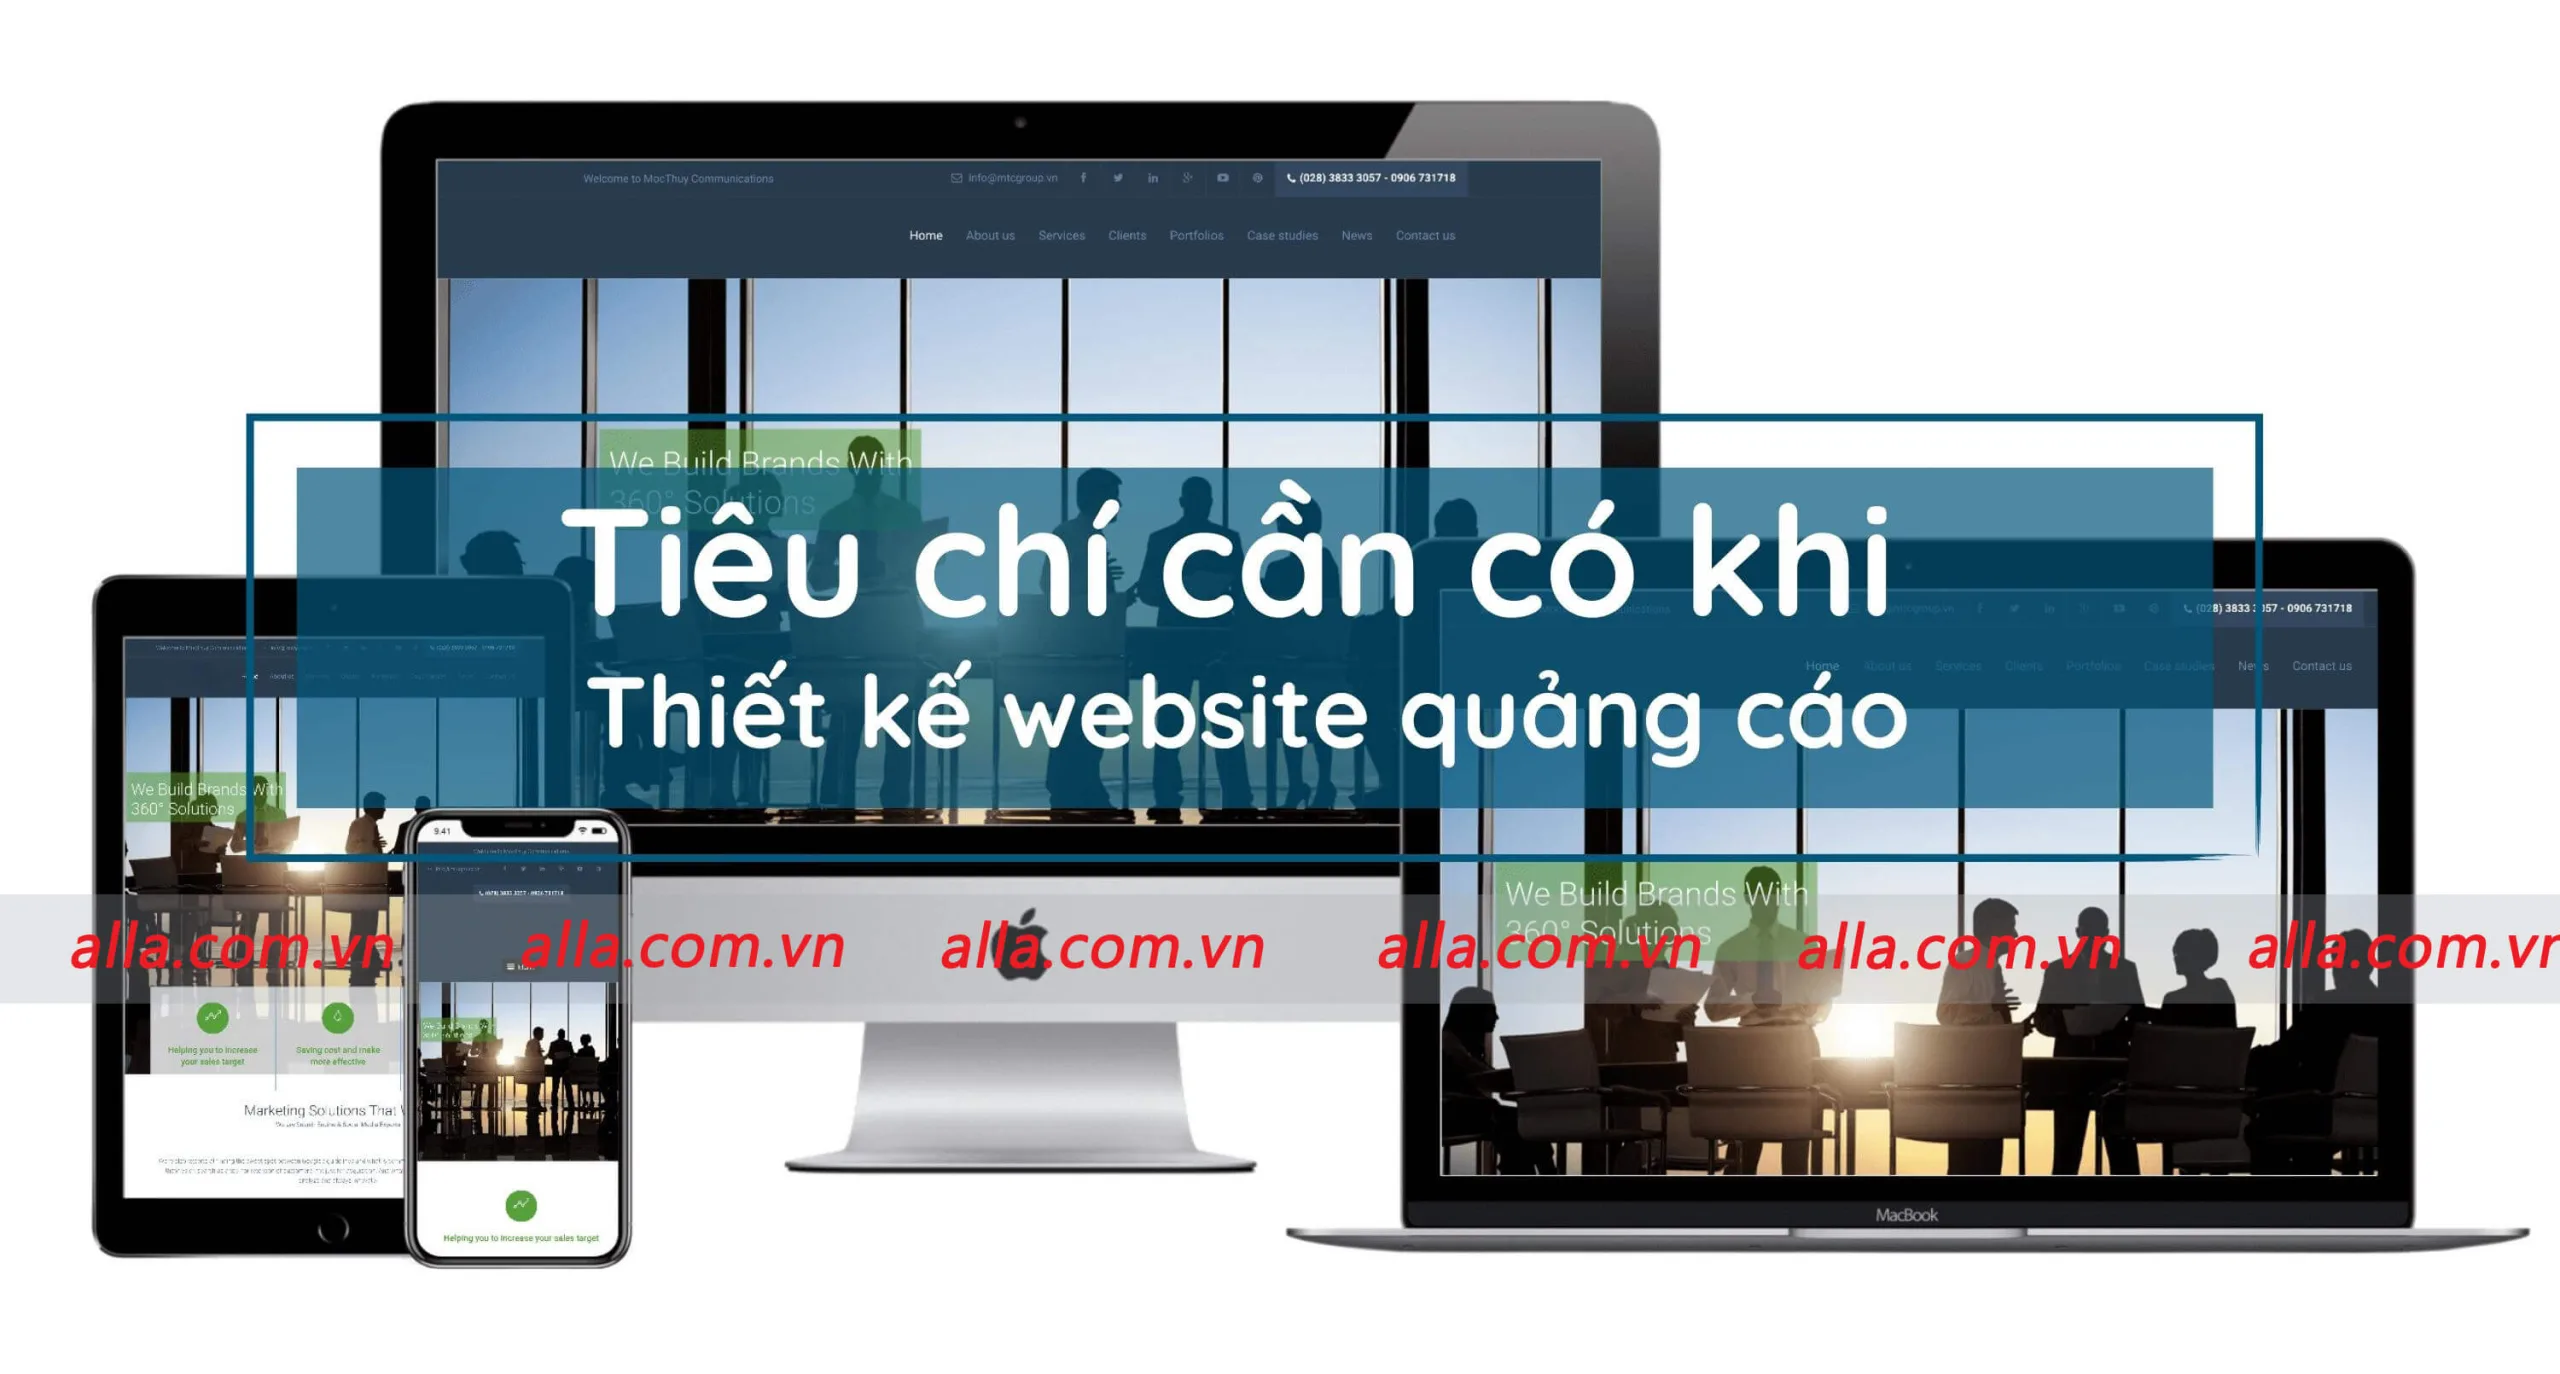 thiet-ke-website-truyen-thong-quang-cao-chuyen-nghiep-can-co-nhung-tieu-chi-gi